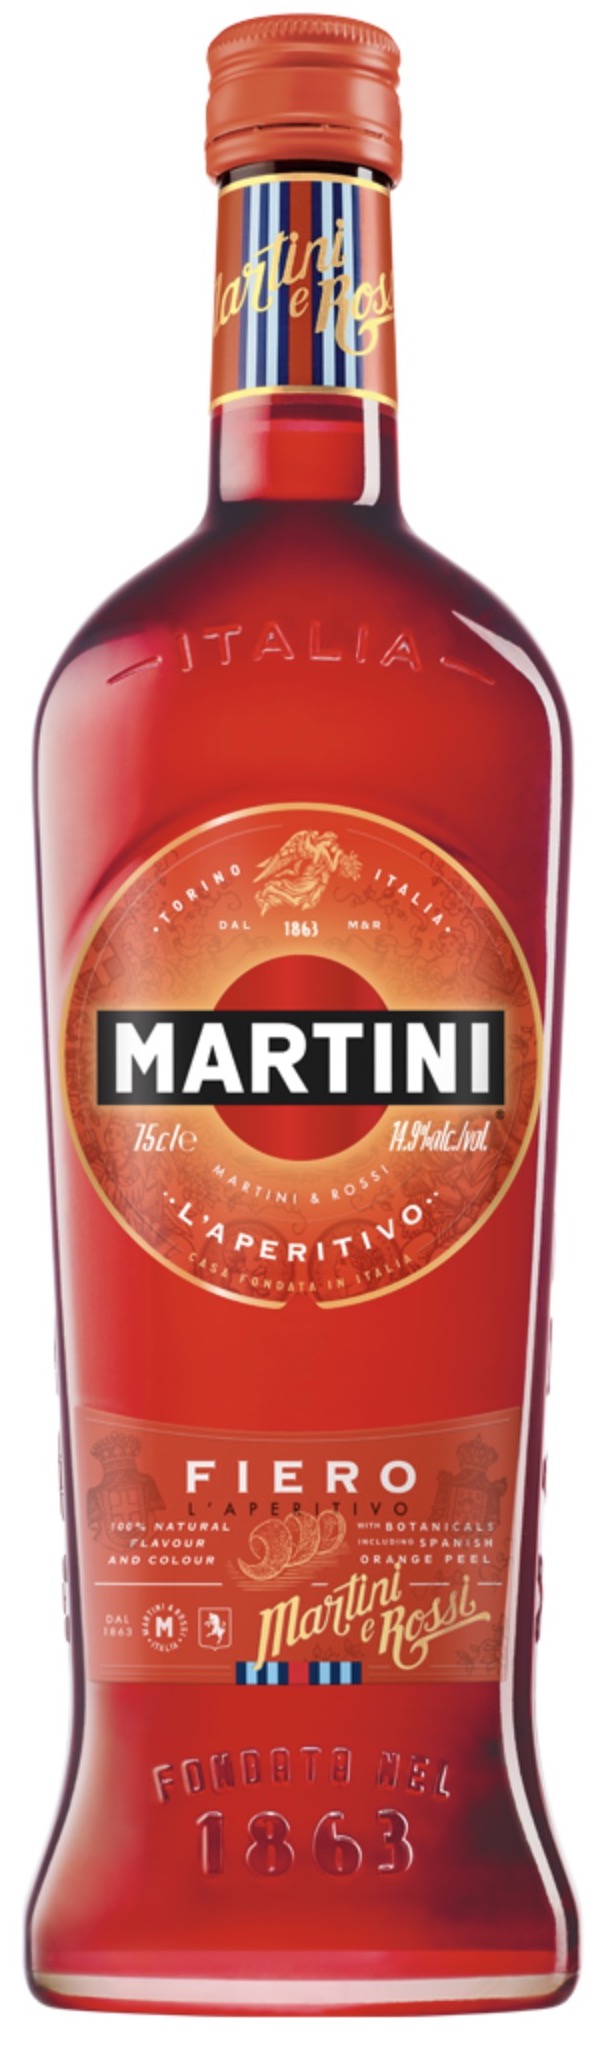 Martini Fiero 14,4% vol. 0,75L